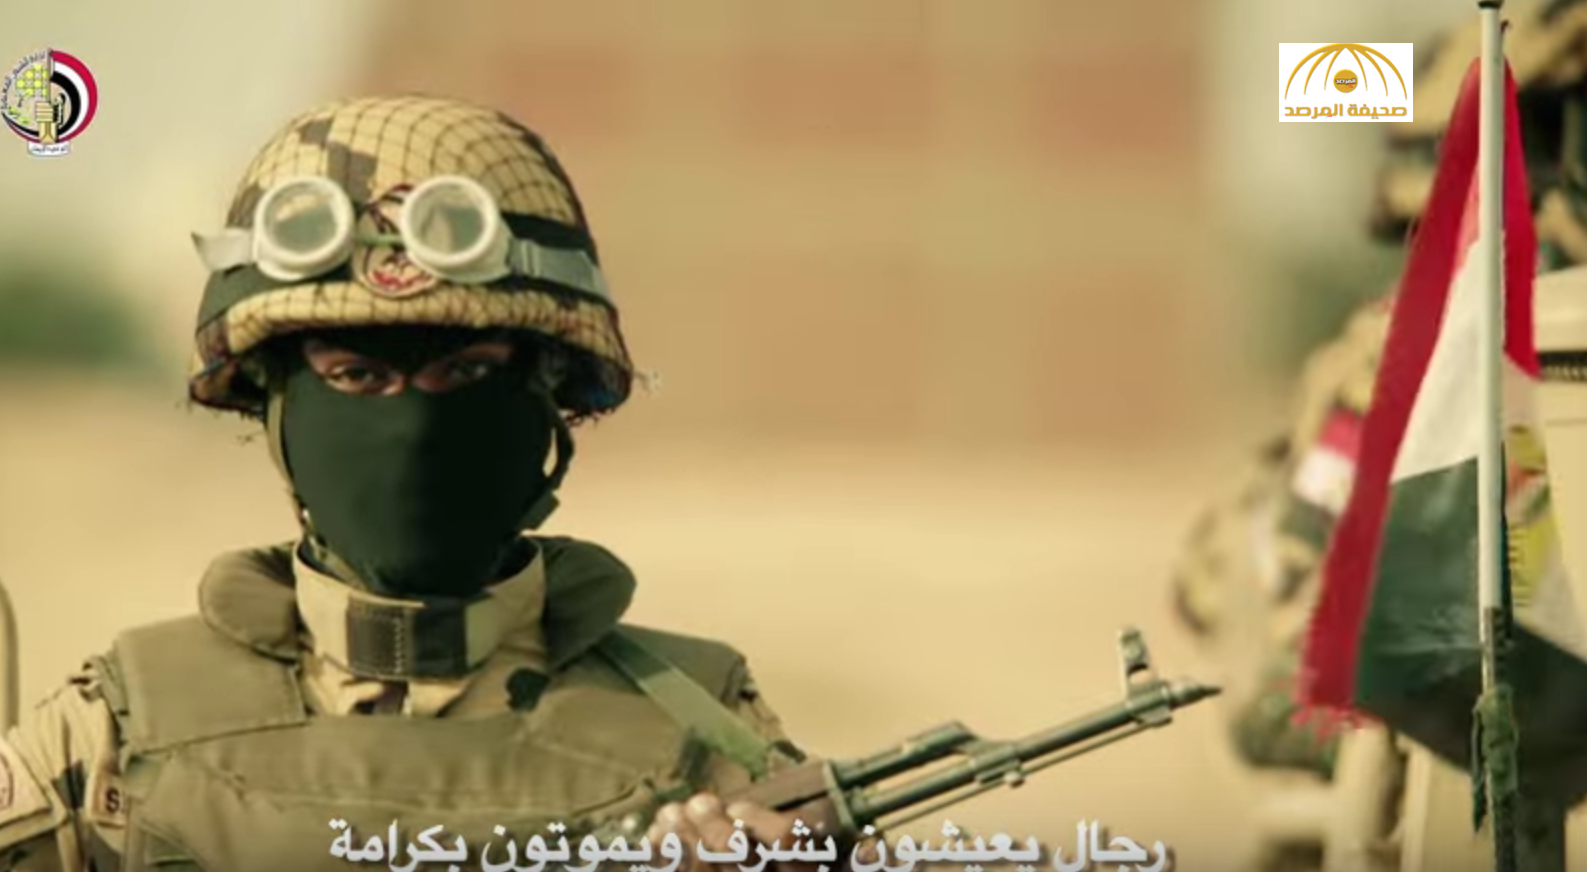 بالفيديو : الجيش المصري يستعرض قدراته.. ومغردون: "من حق الكبير يتدلع"